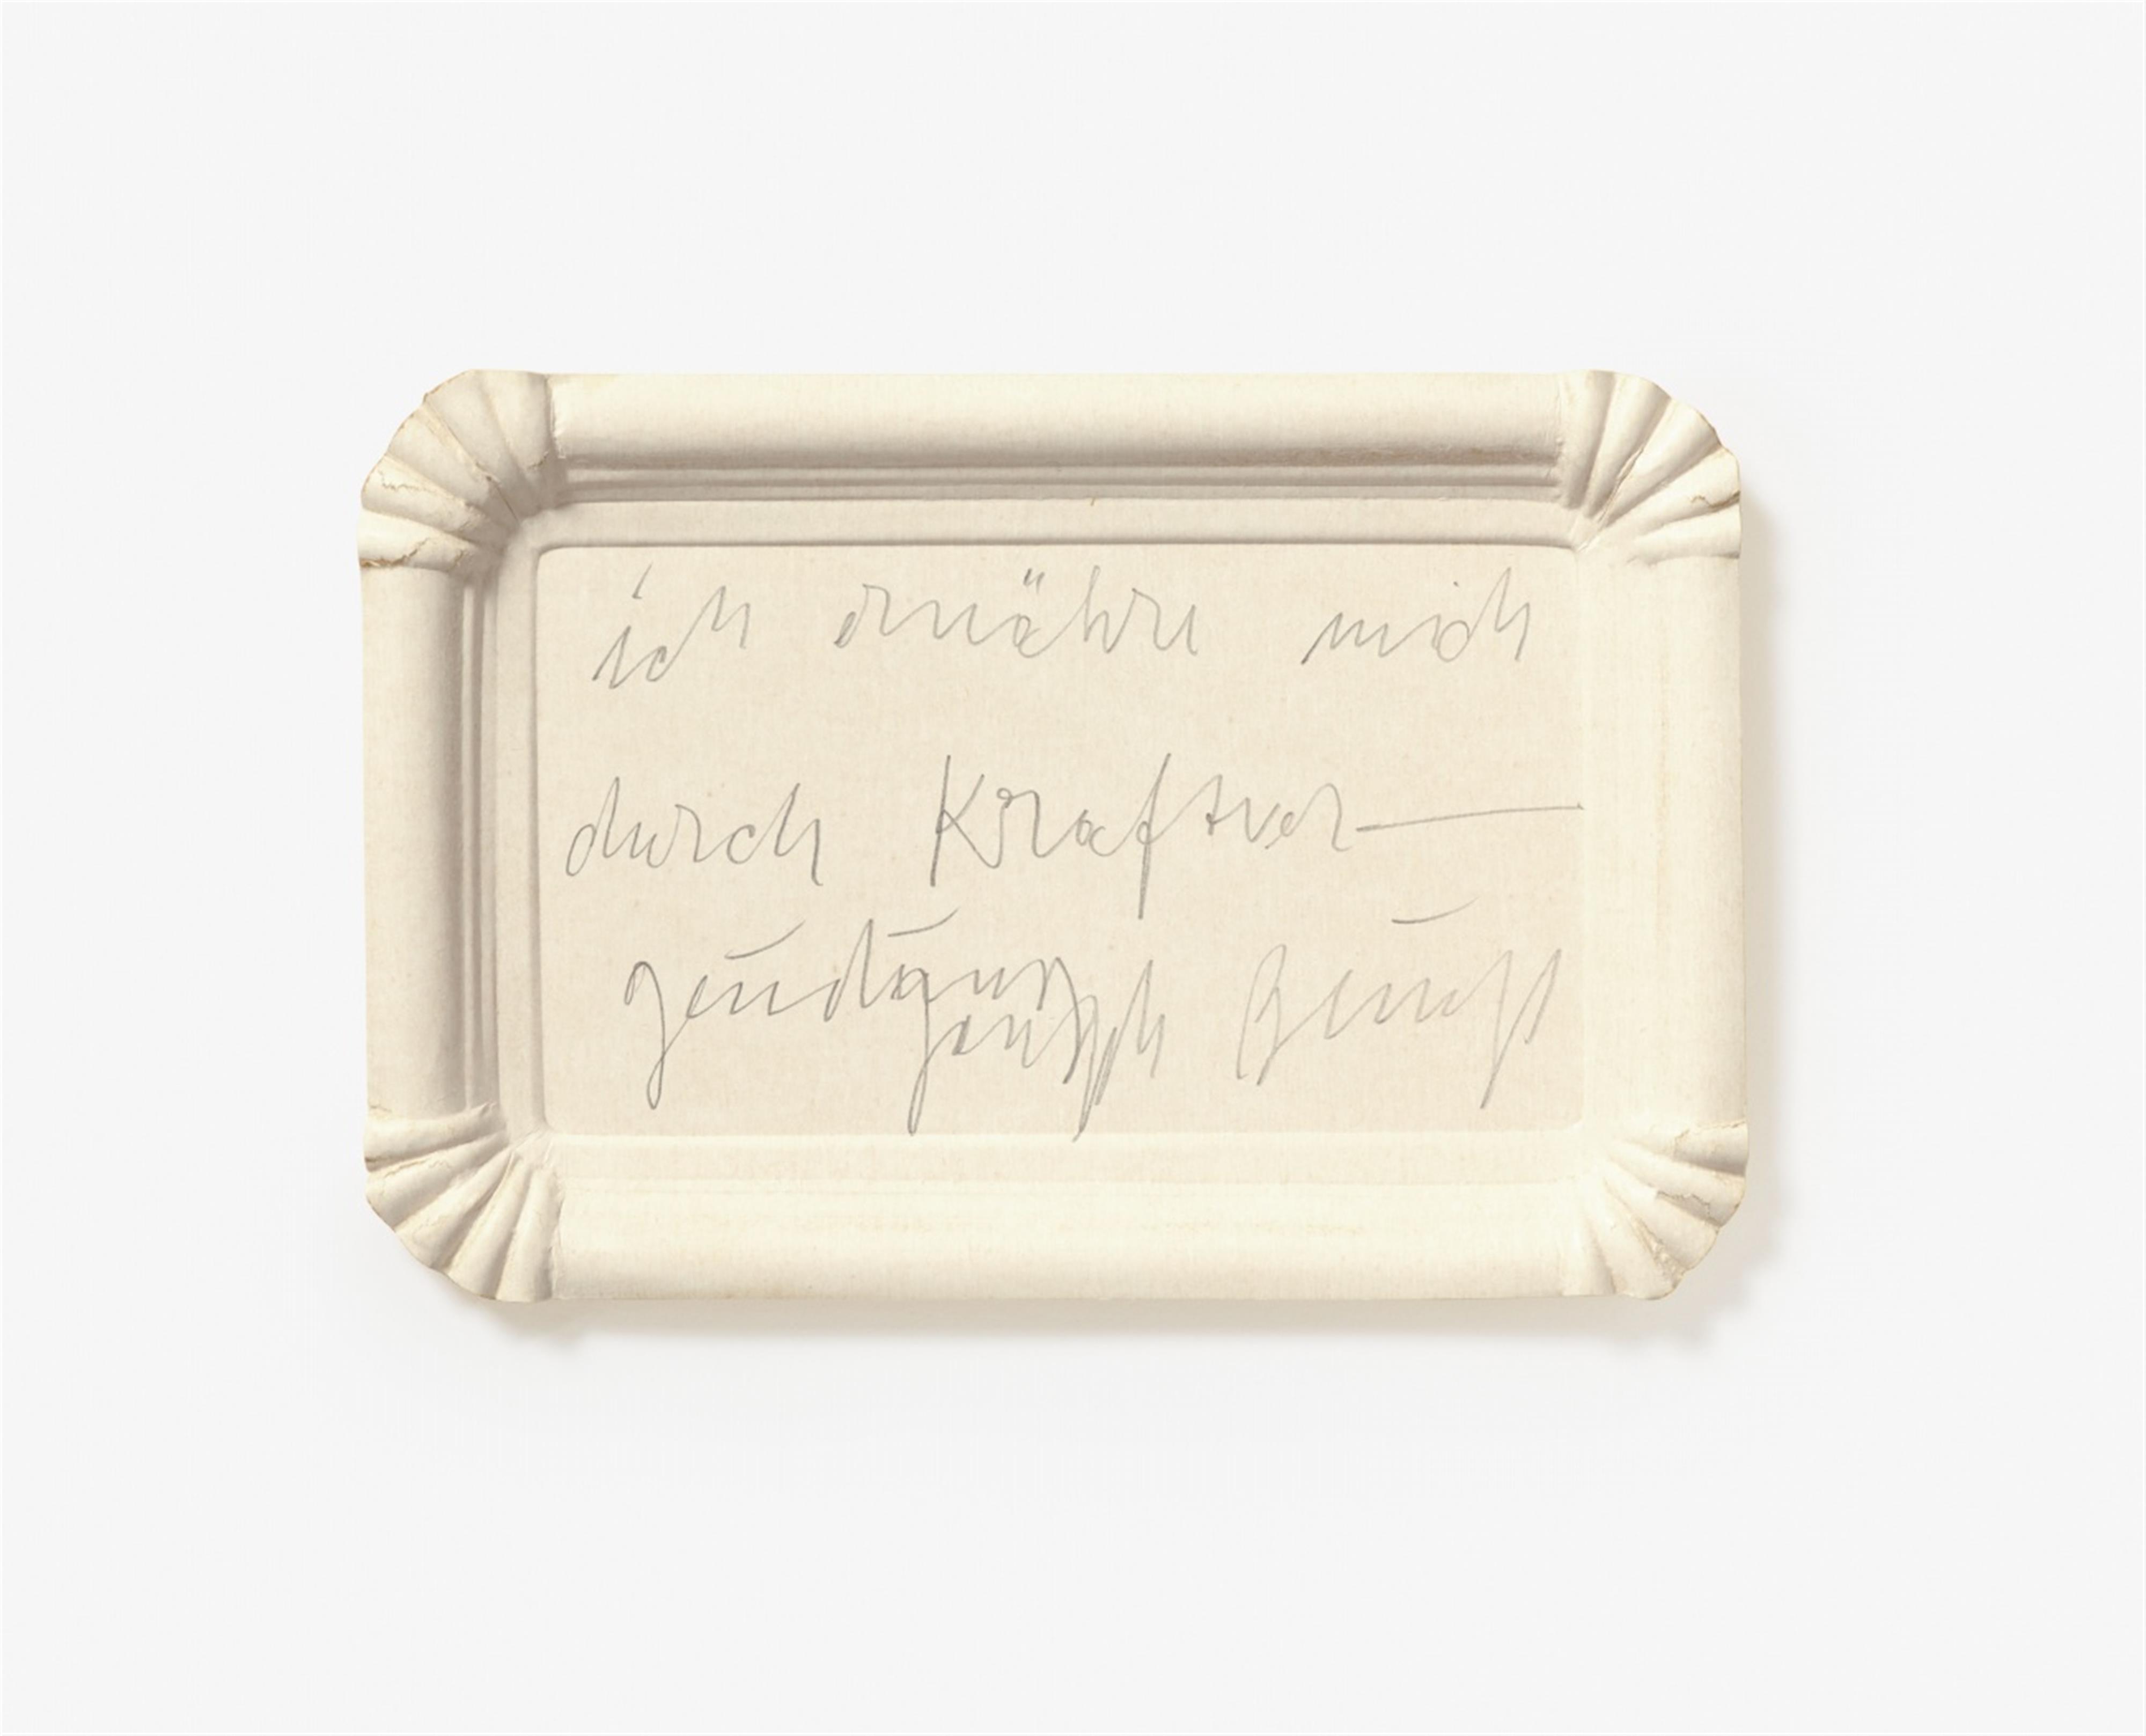 Joseph Beuys - Ich ernähre mich durch Kraftvergeudung - image-1